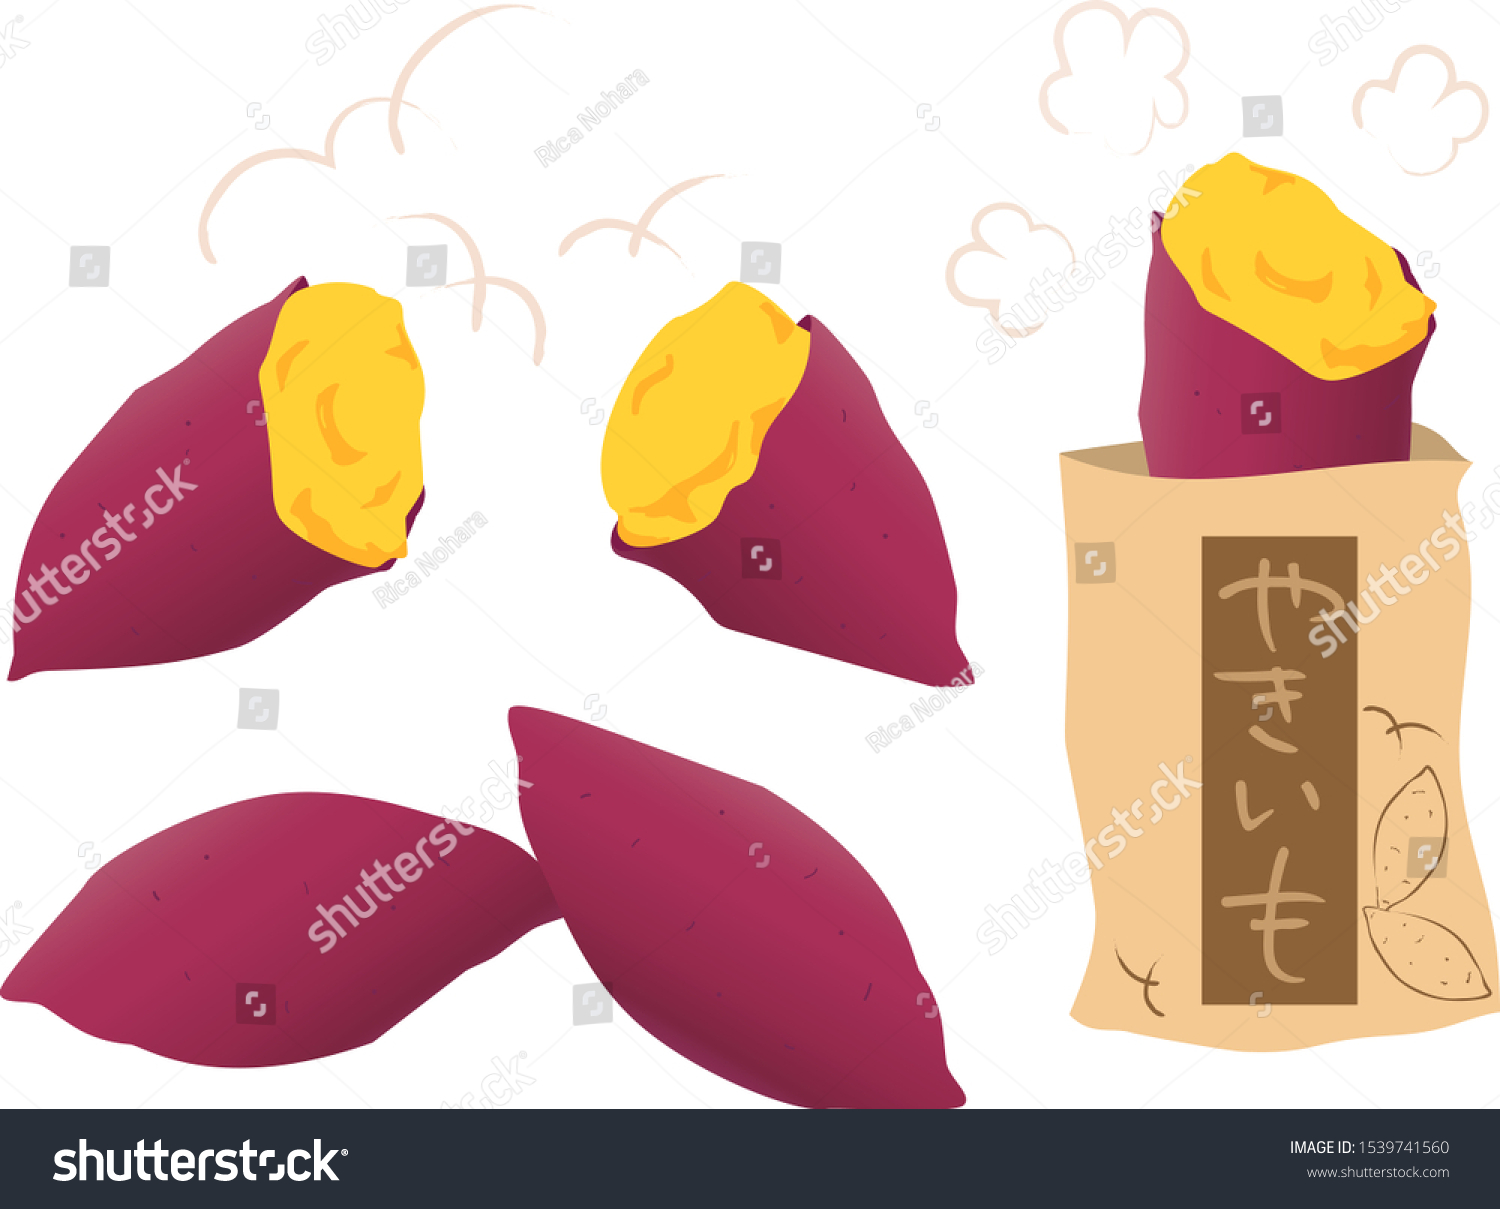 焼き芋 のイラスト素材 画像 ベクター画像 Shutterstock